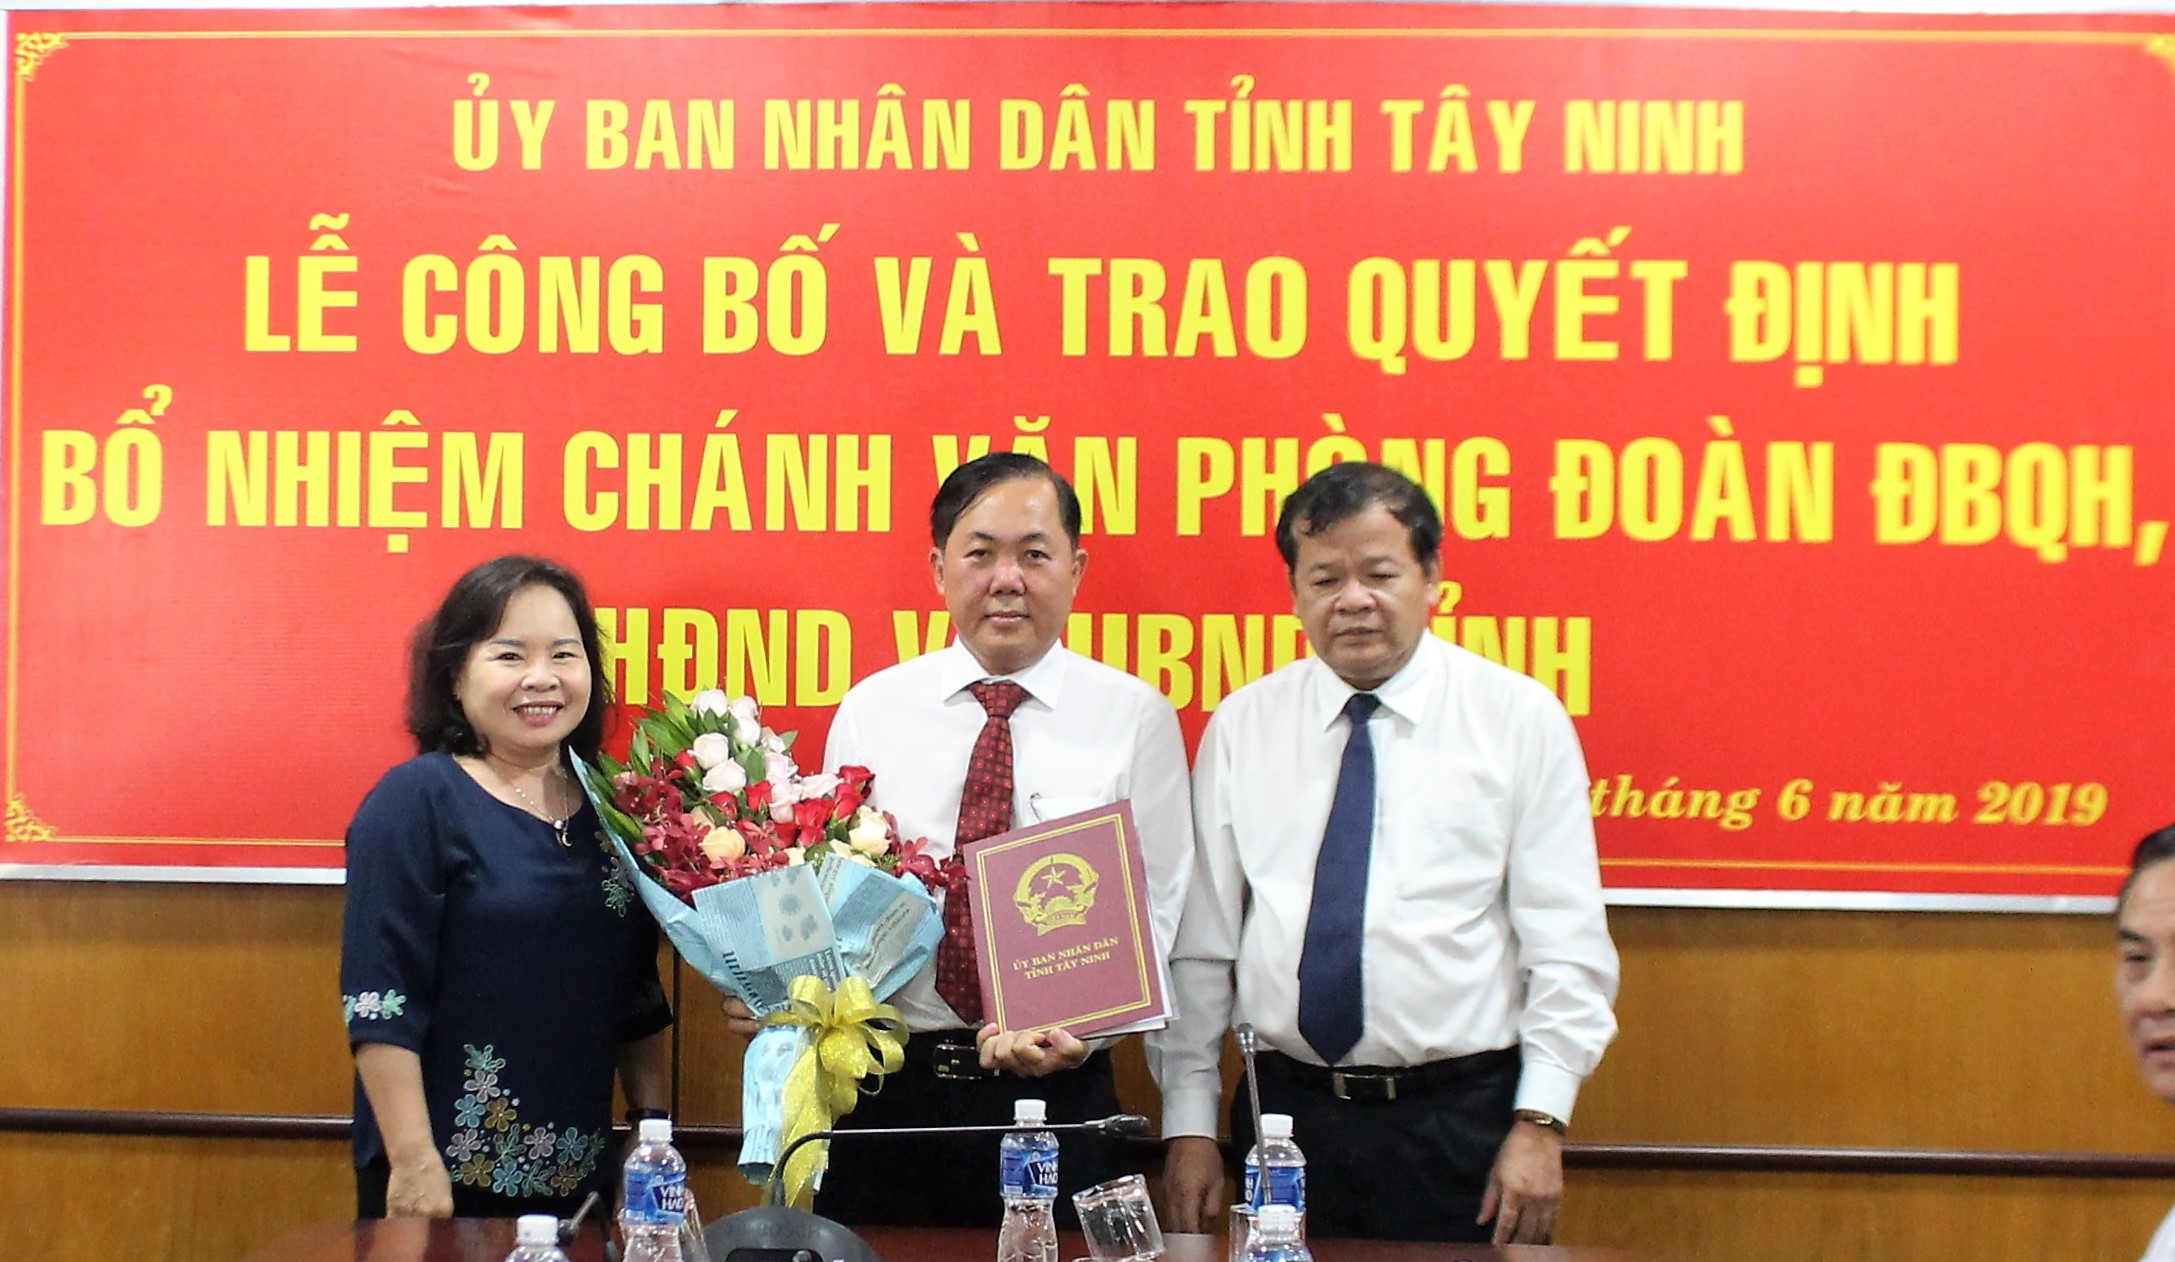 Trao quyết định bổ nhiệm Chánh Văn phòng Đoàn đại biểu Quốc hội, HĐND và UBND tỉnh